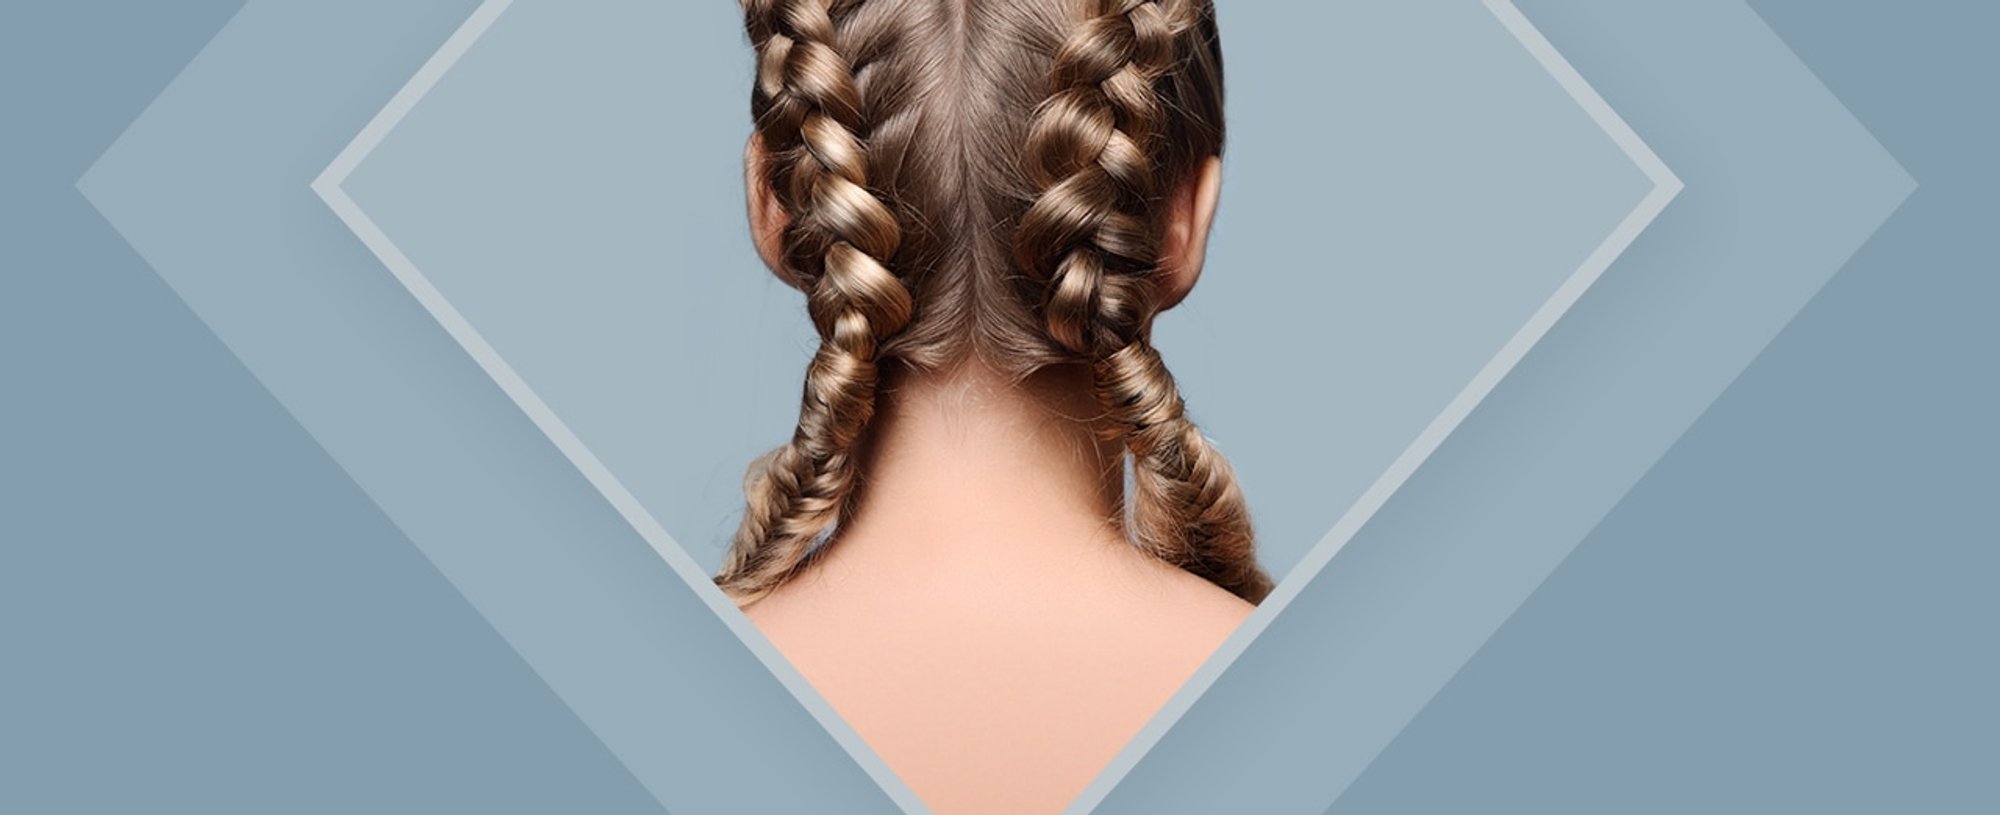 15 Tips to Make Thin Hair Look Thicker - L'Oréal Paris